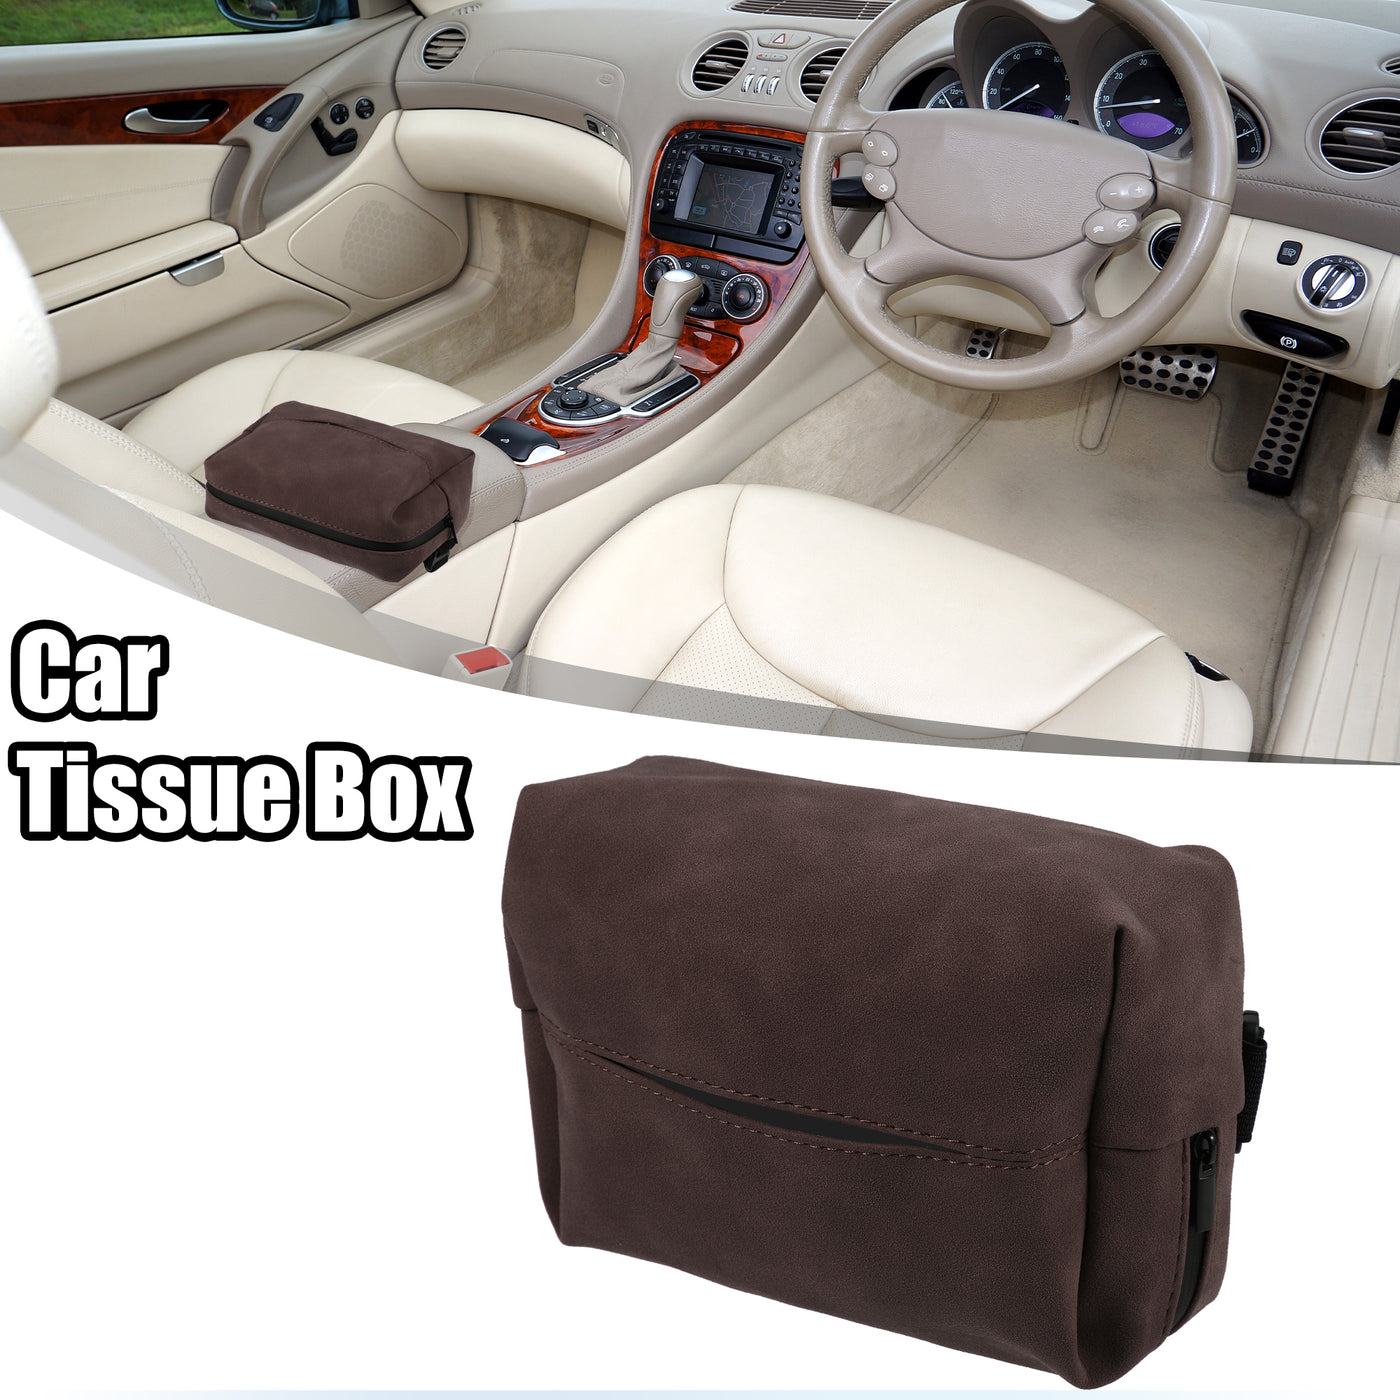 ACROPIX Car Center Armrest Back Seat Universal Car Tissue Box Car Visor Tissue Holder - Pack of 1